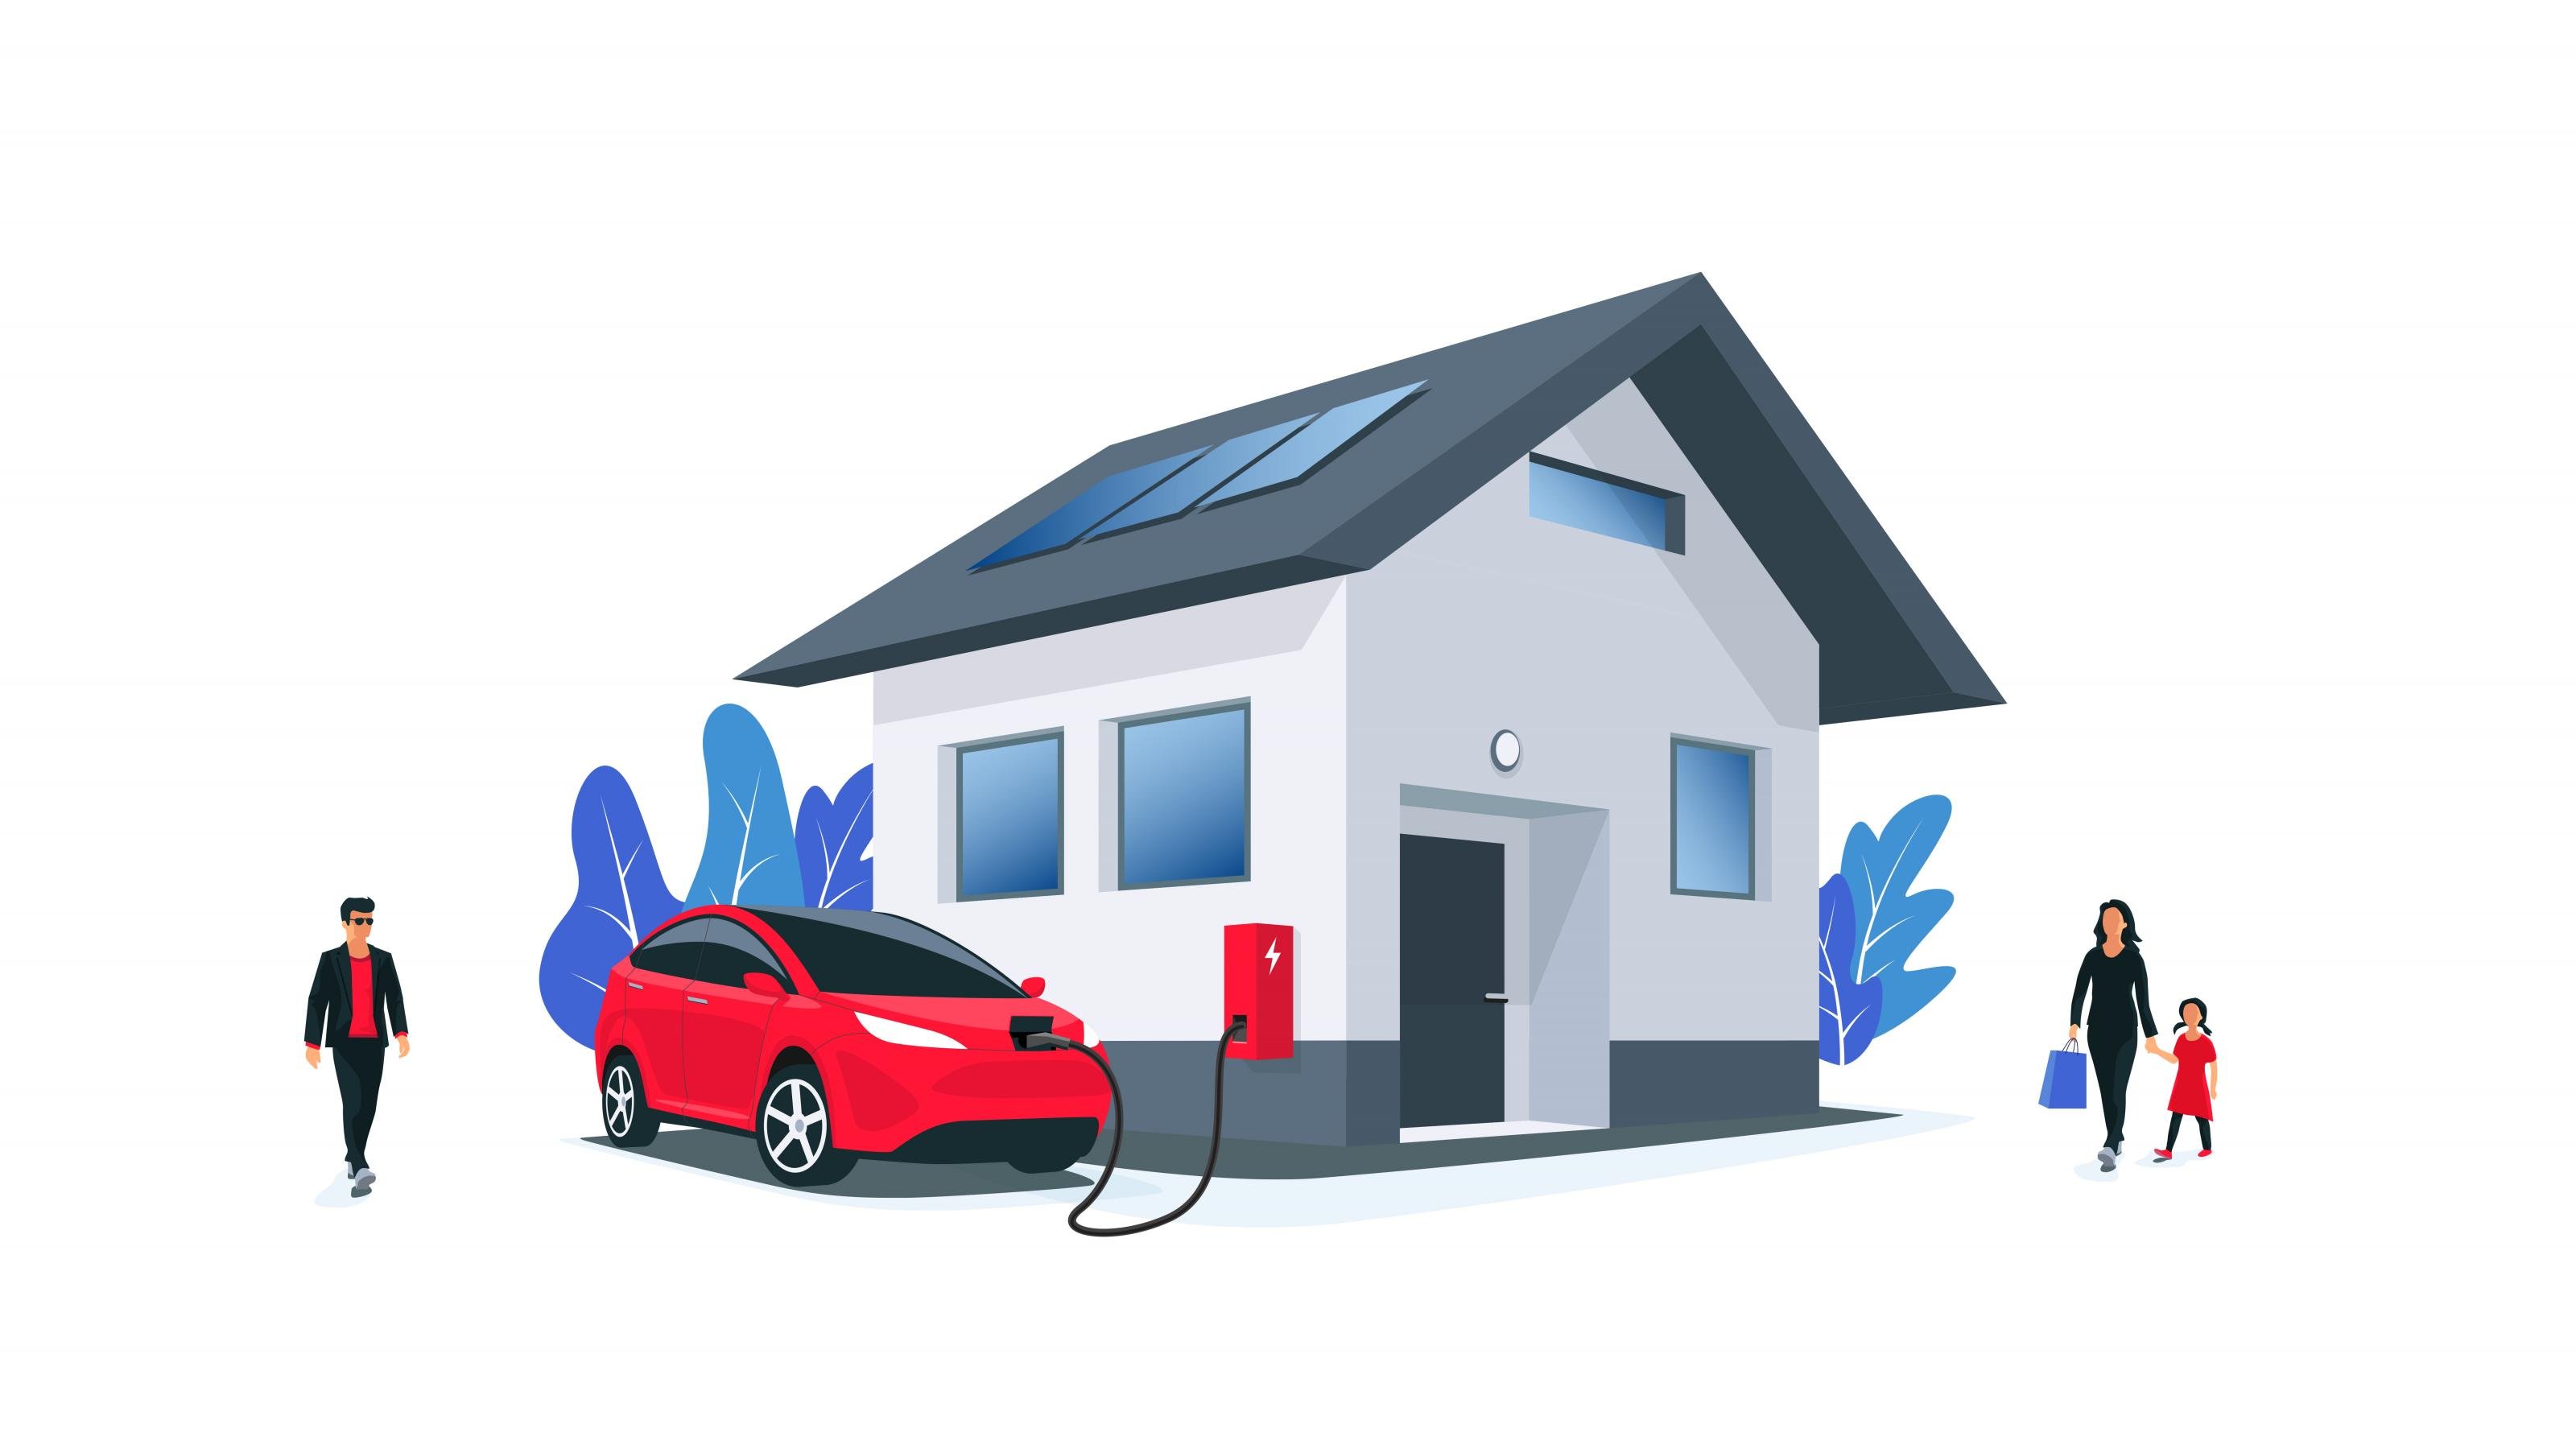 Ein Elektroauto parkt vor einem Haus und lädt an einer Wallbox Strom. Auf dem Dach des Hauses sind Solarpanels angebracht; vor dem Haus gehen Personen spazieren.